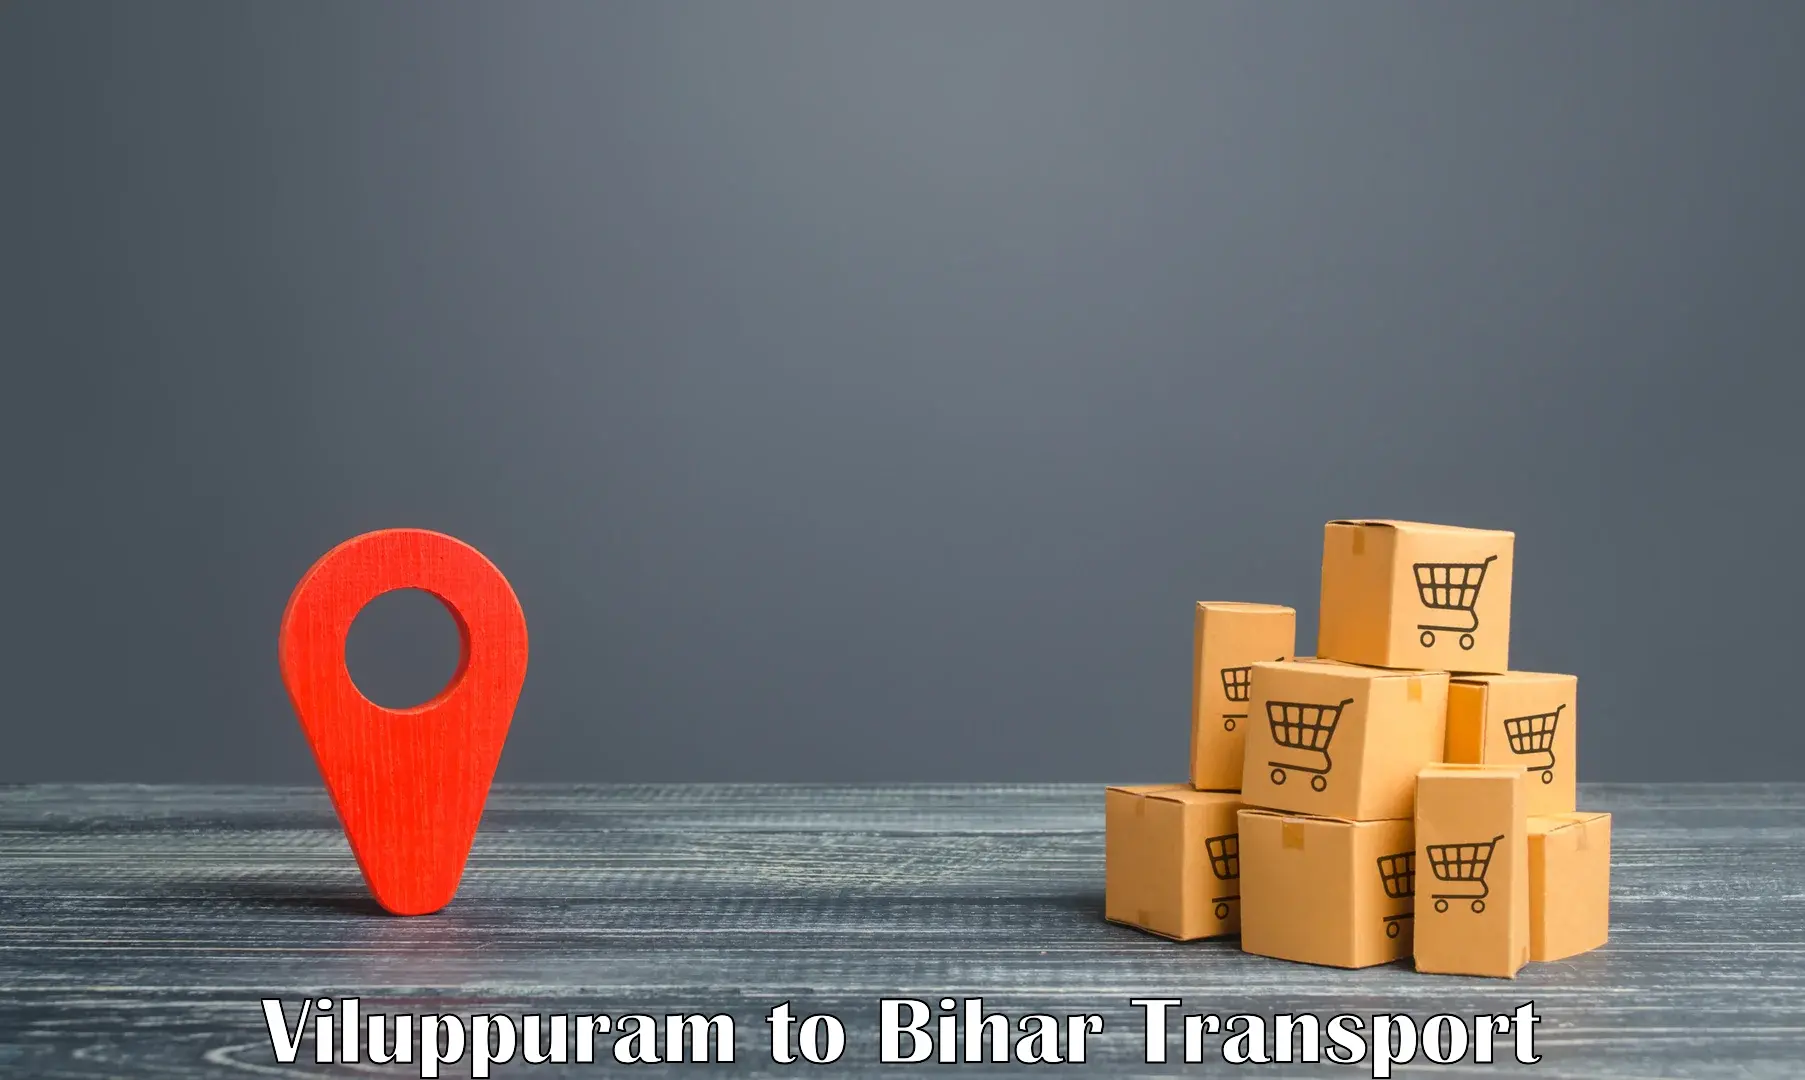 Nationwide transport services Viluppuram to Bikramganj